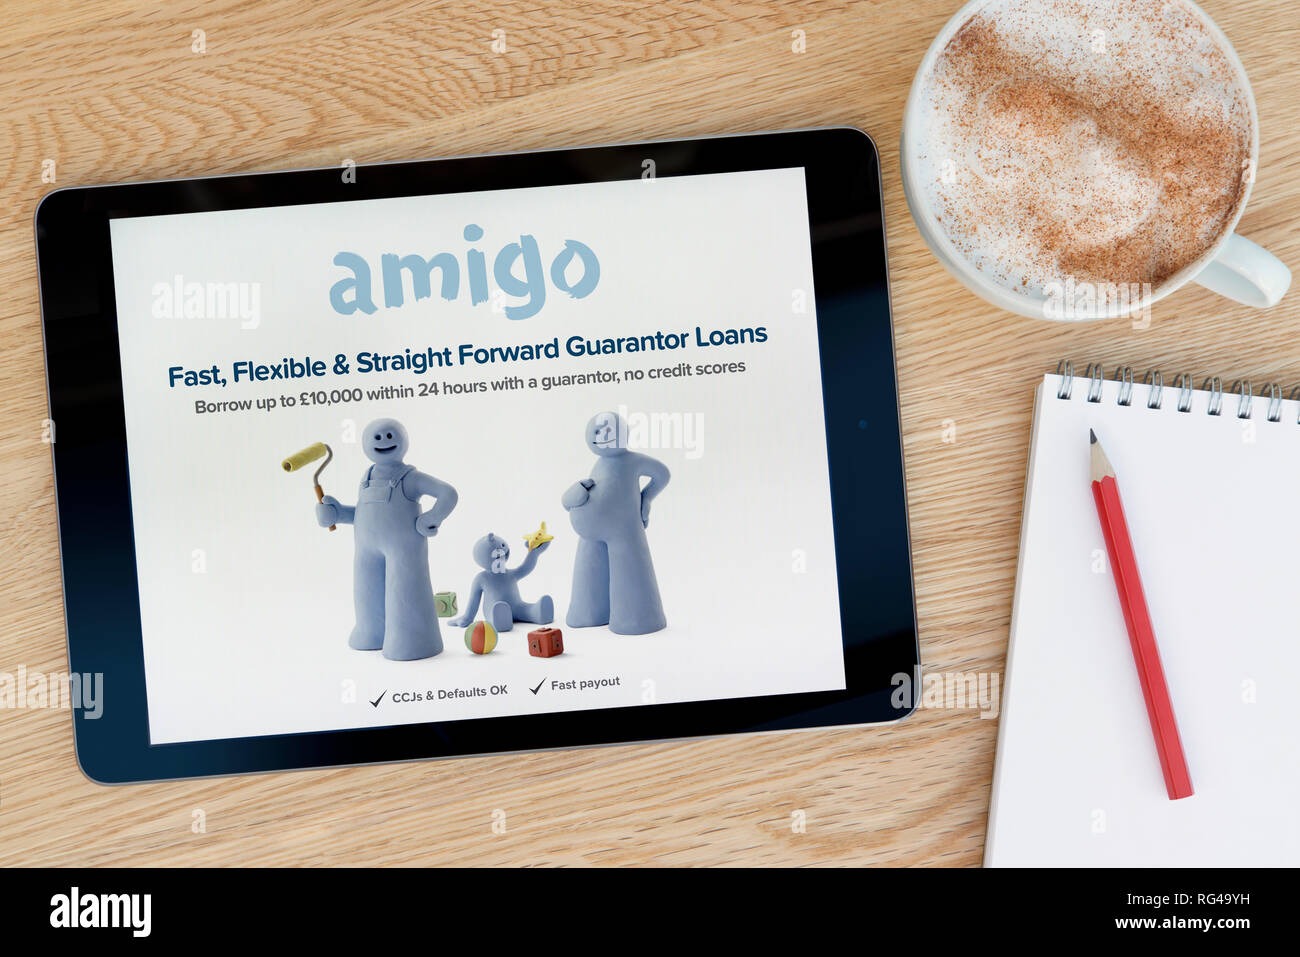 Die Amigo Darlehen website Funktionen auf einem iPad Tablet Gerät, das auf einem Tisch liegt neben einem Notizblock (nur redaktionelle Nutzung). Stockfoto